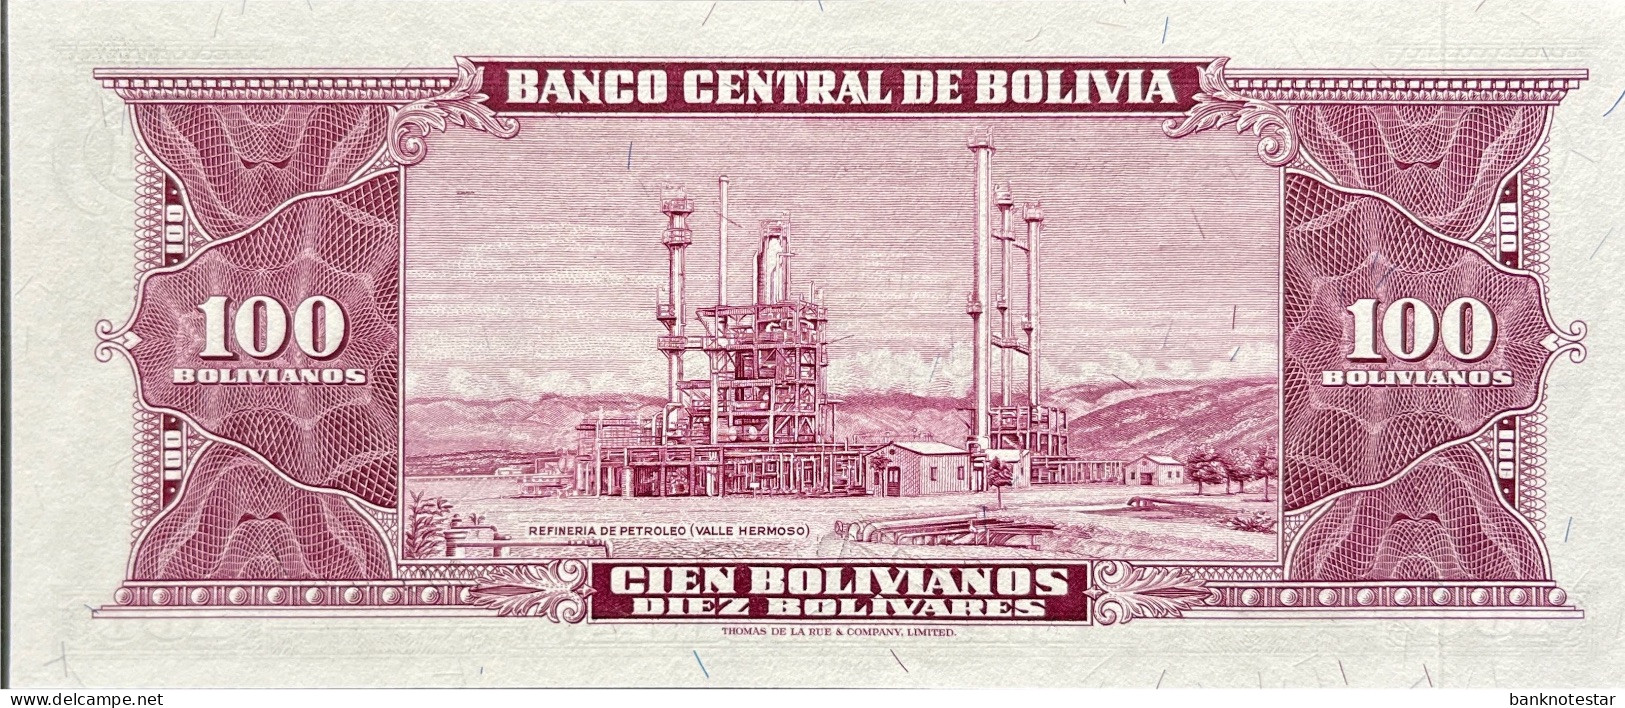 Bolivia 100 Bolivianos, P-147 (L.1945) - UNC - Bolivie